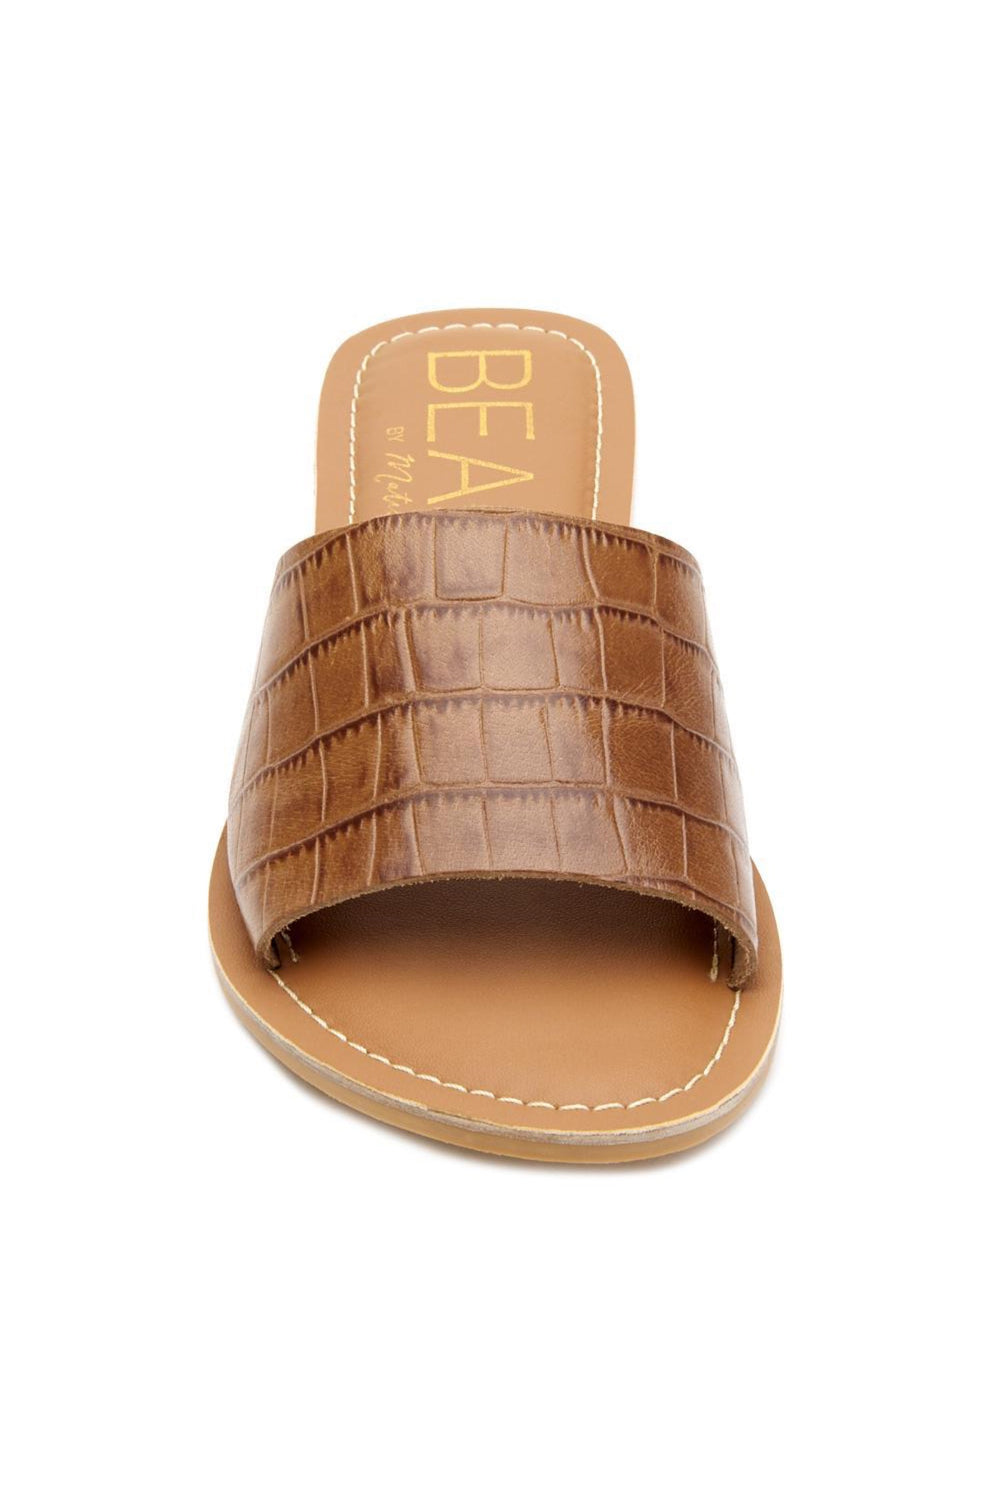 Tan Croc Cabana Sandal